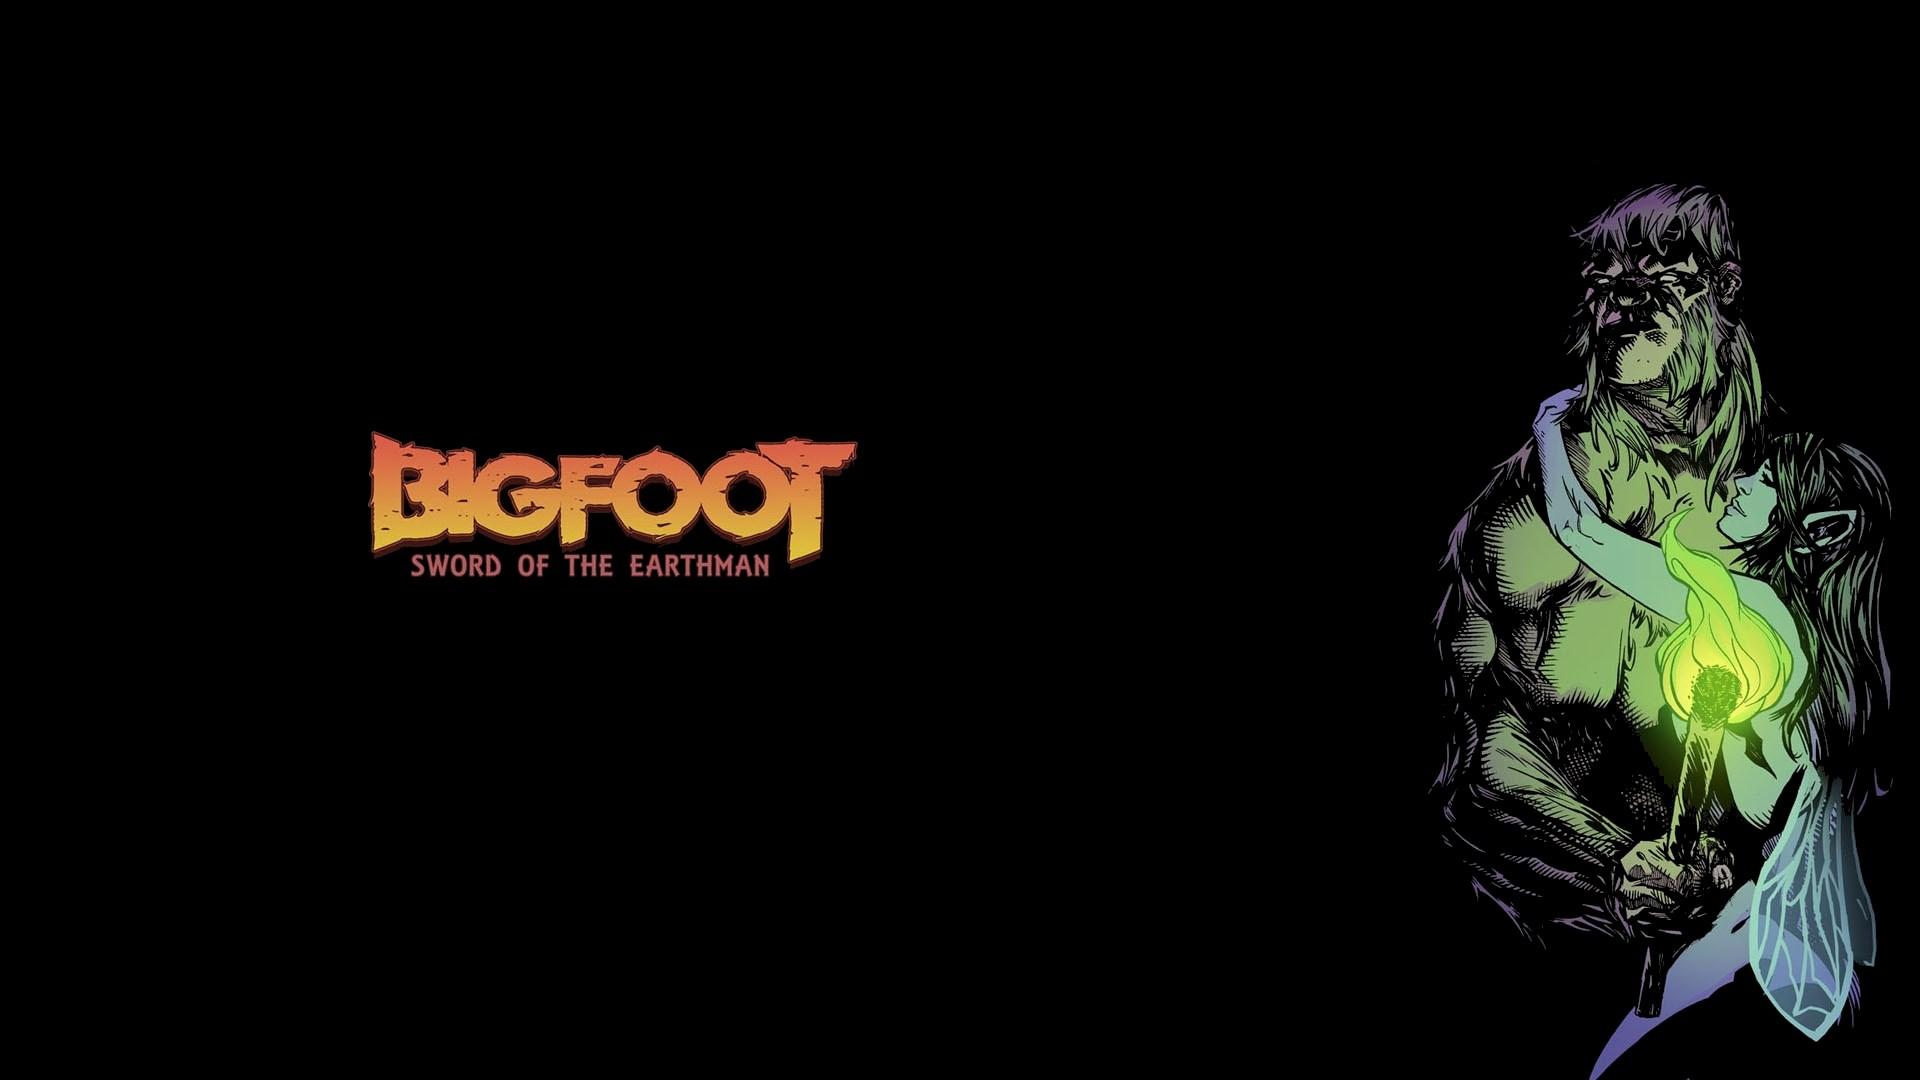 bigfoot 1920x1080. Comics. Tokkoro.com Amazing HD Wallpaper